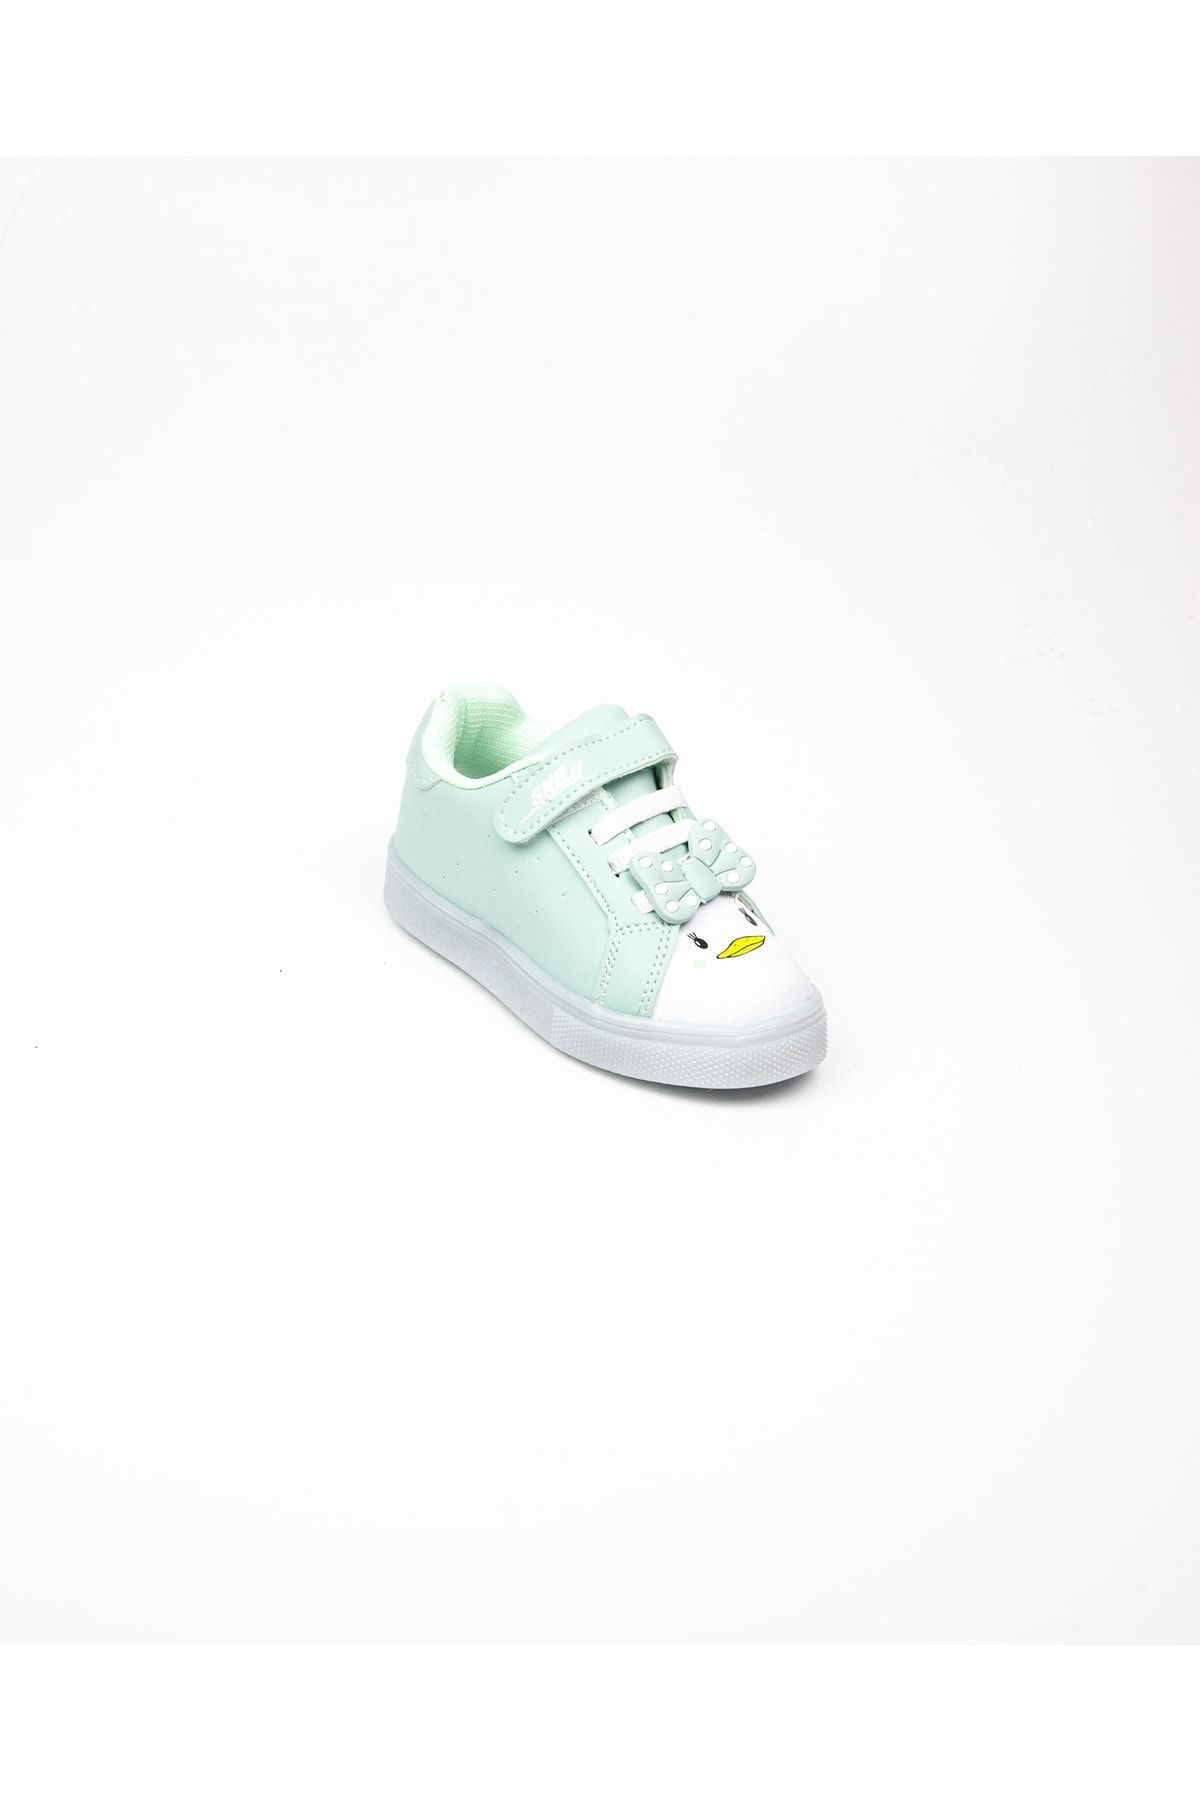 Sanbe 128 V 7701 Yeşil Bebek Işıklı Spor Ayakkabı